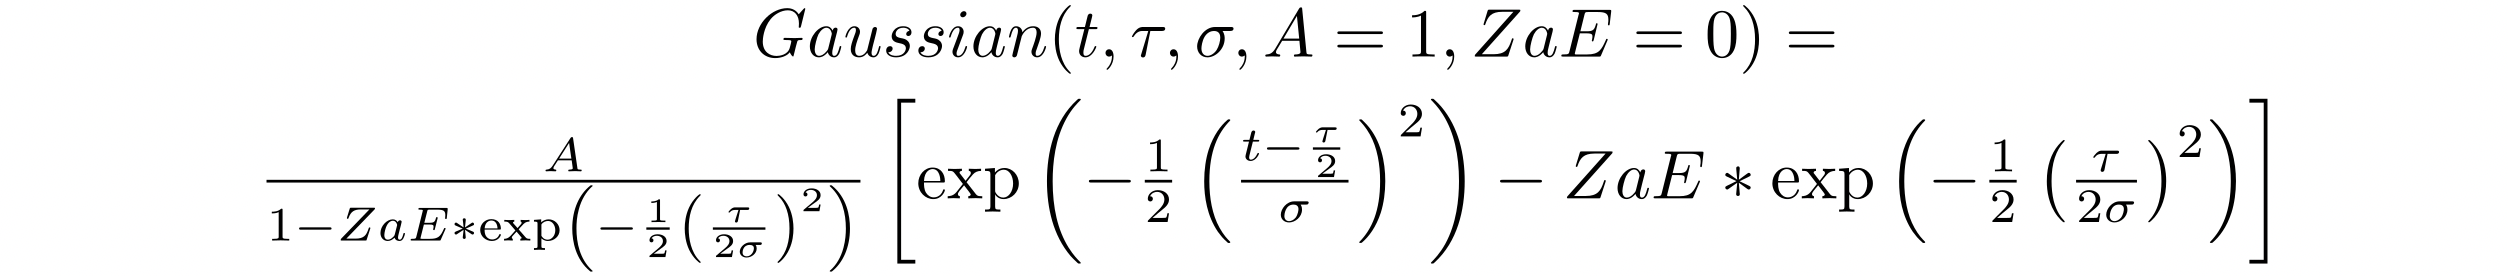 
               GaussianFunction
            